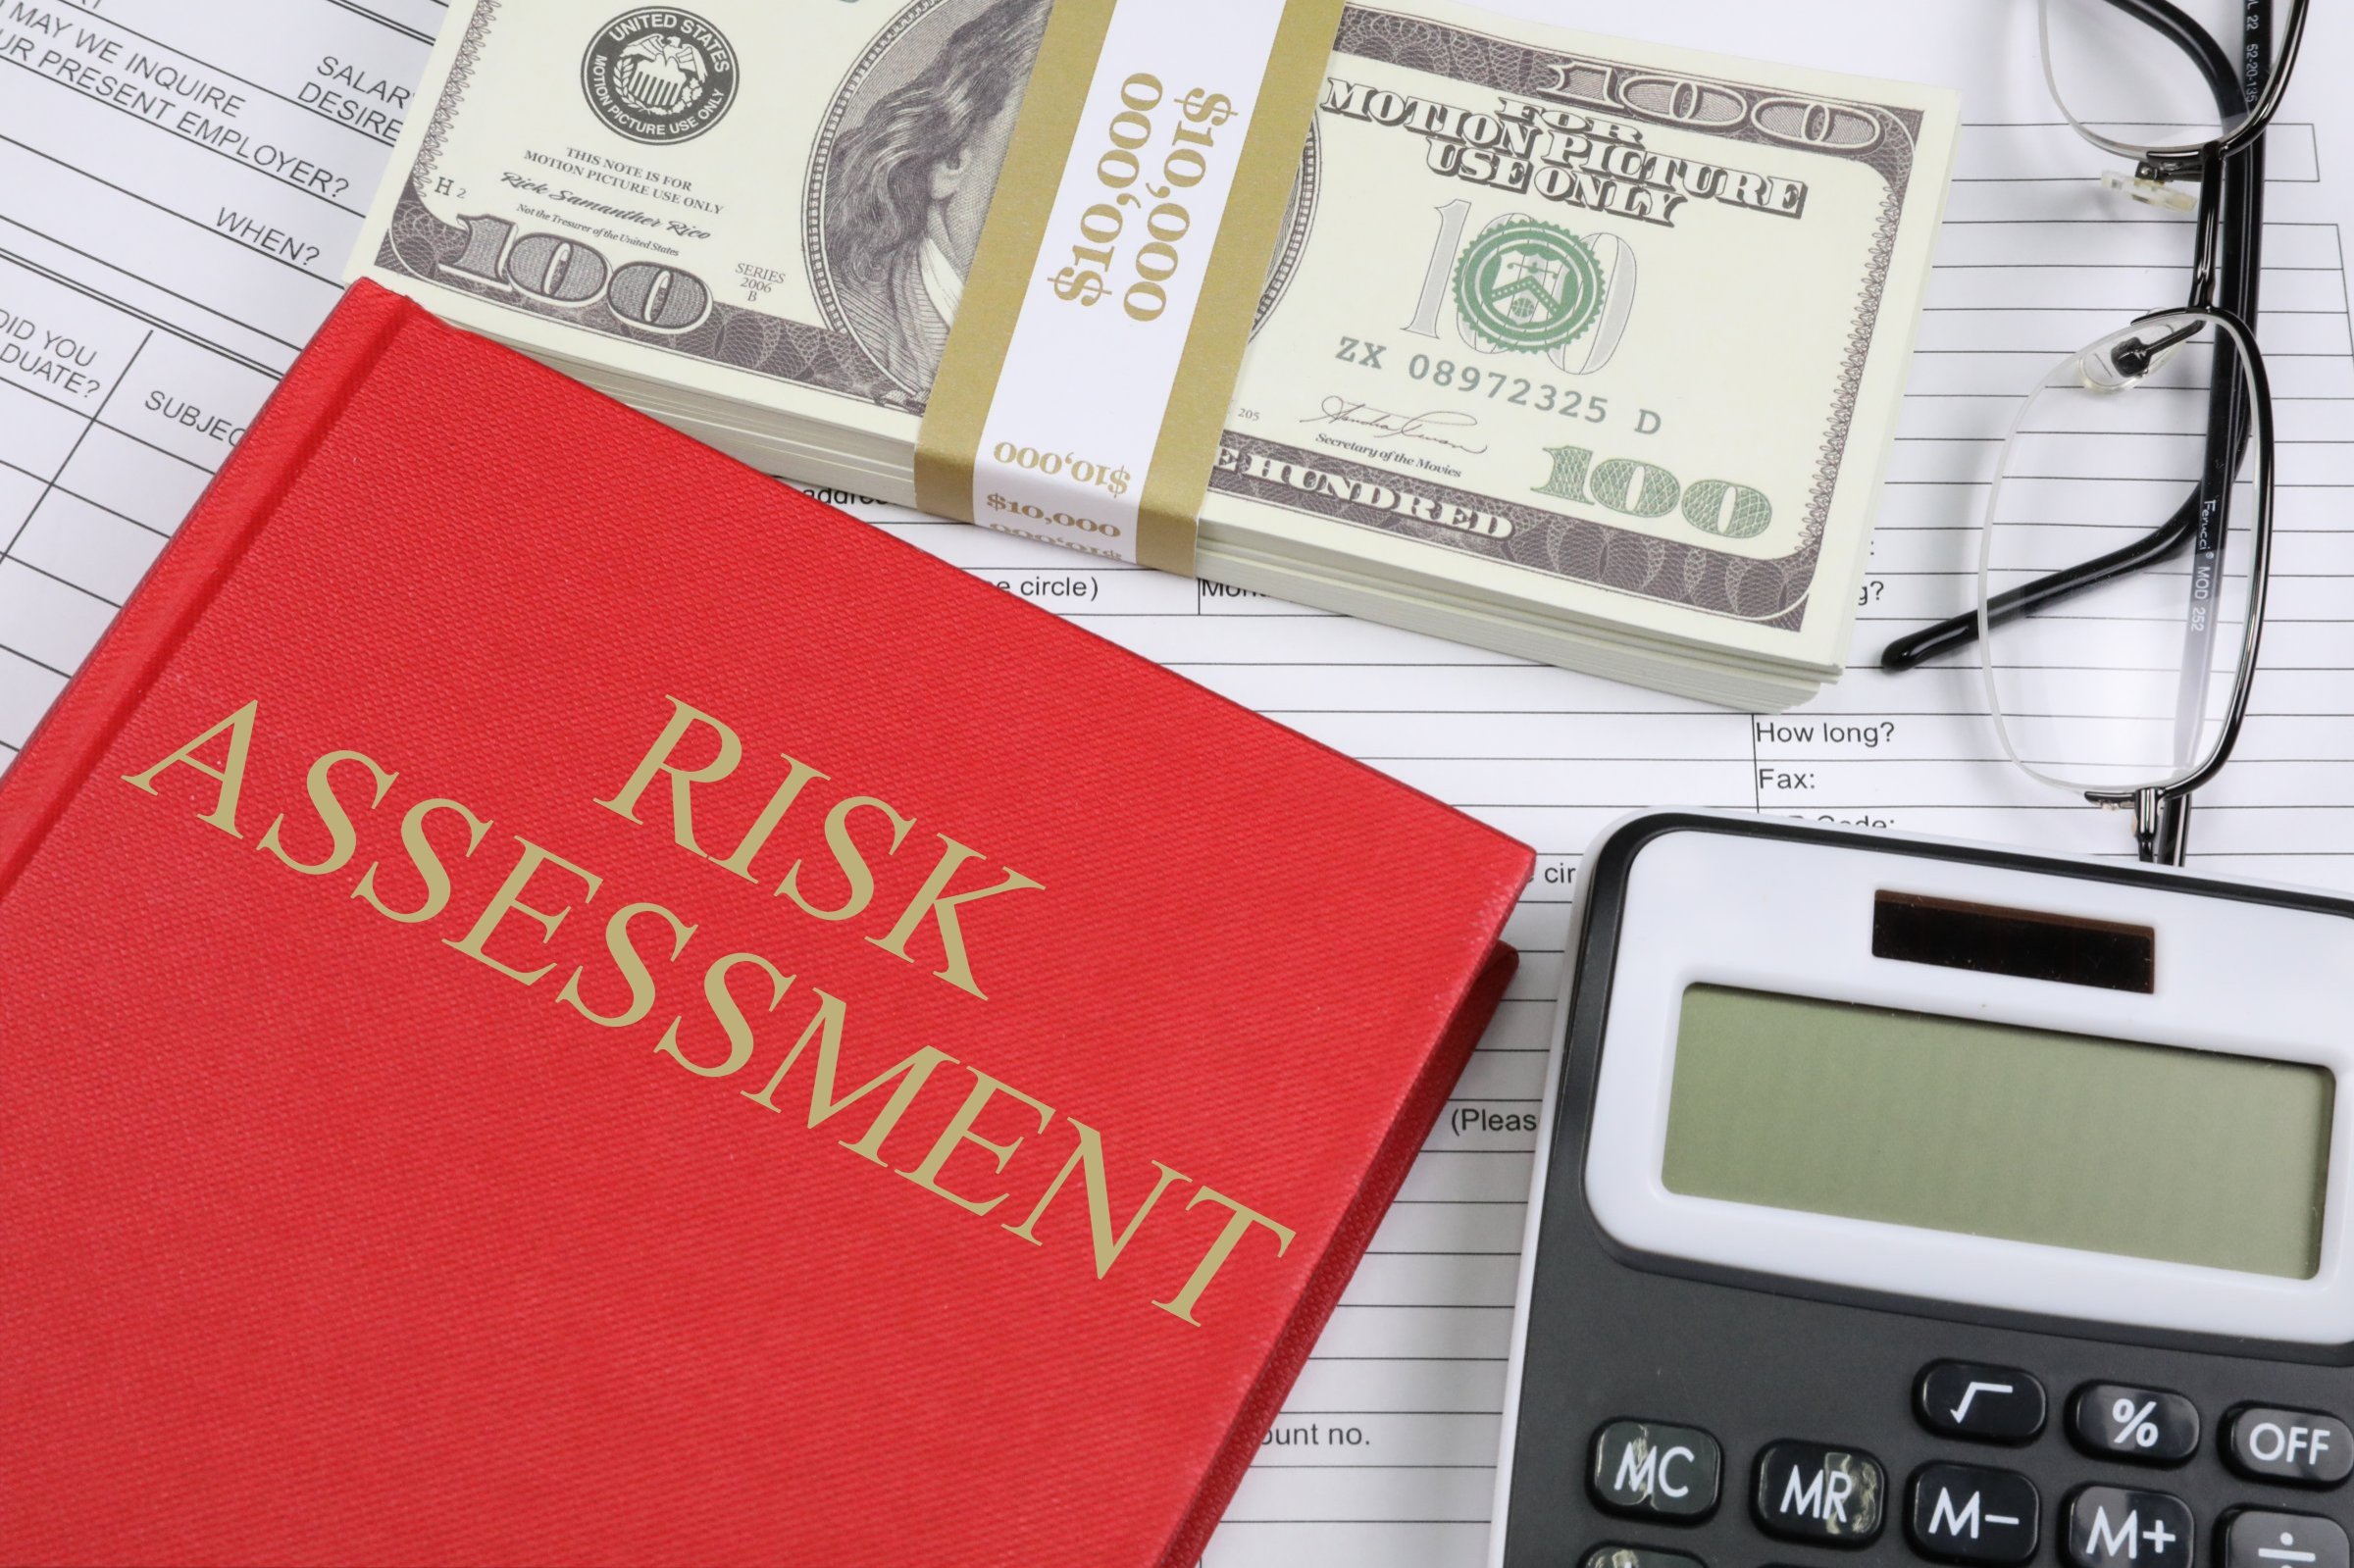 3. 风险评估与合规建议：减少购买tg账号带来的潜在风险